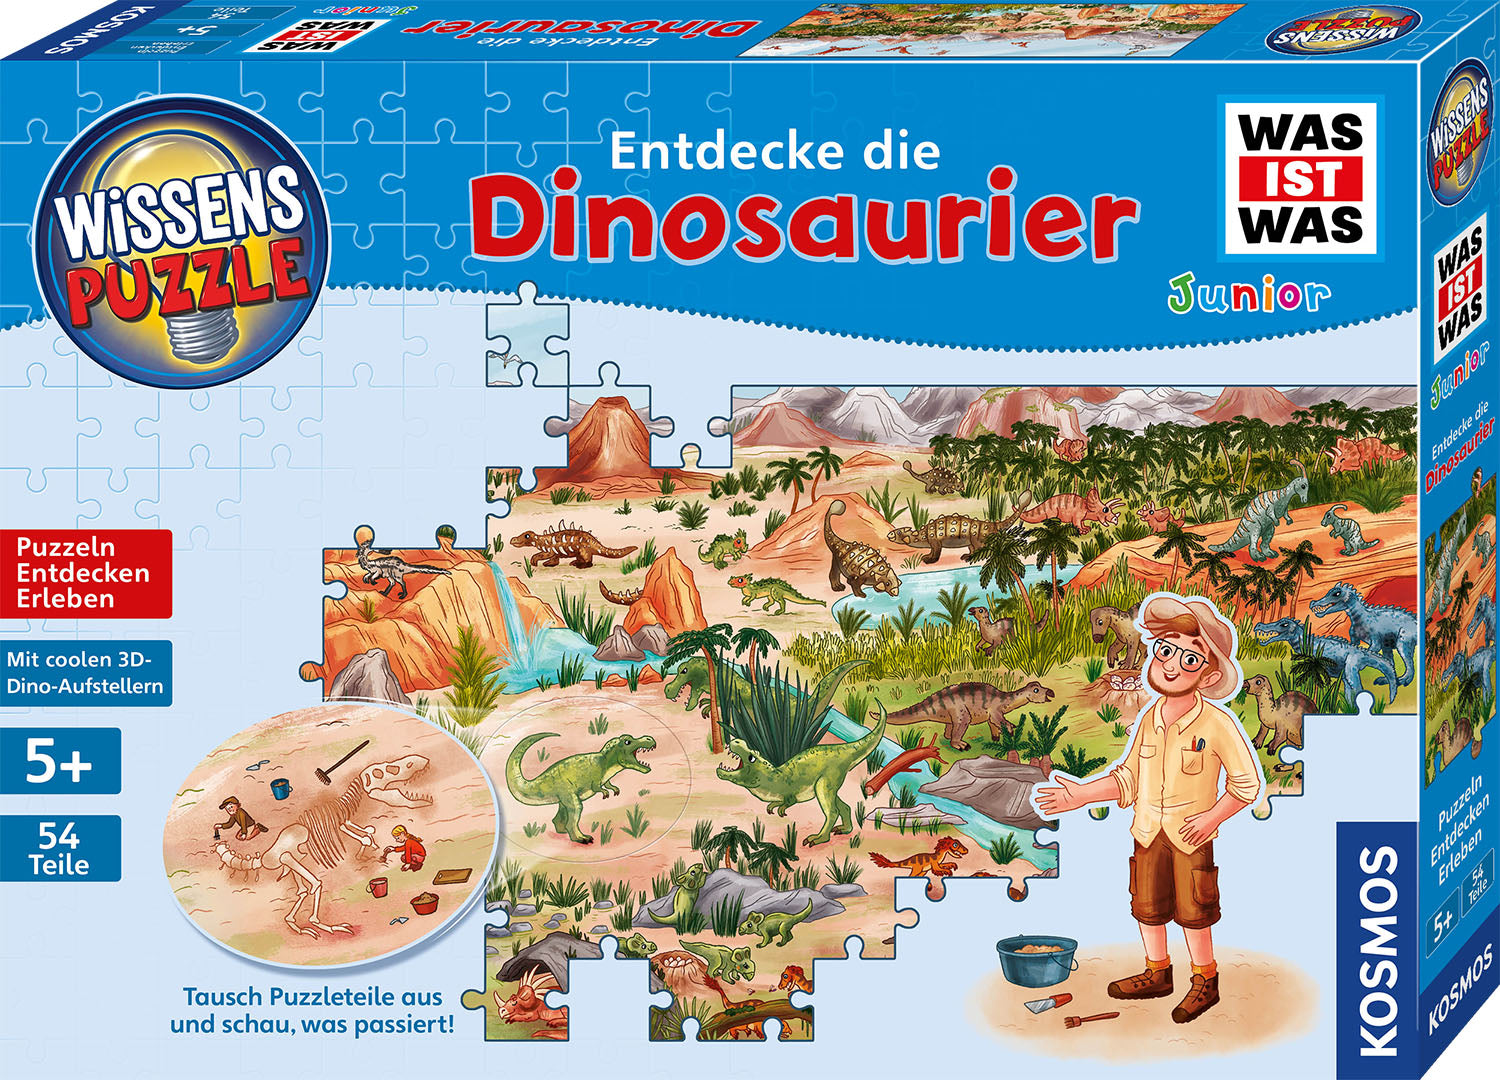 Was ist Was? Junior - Dinosaurier | Wissenspuzzle 54 Teile | Kosmos